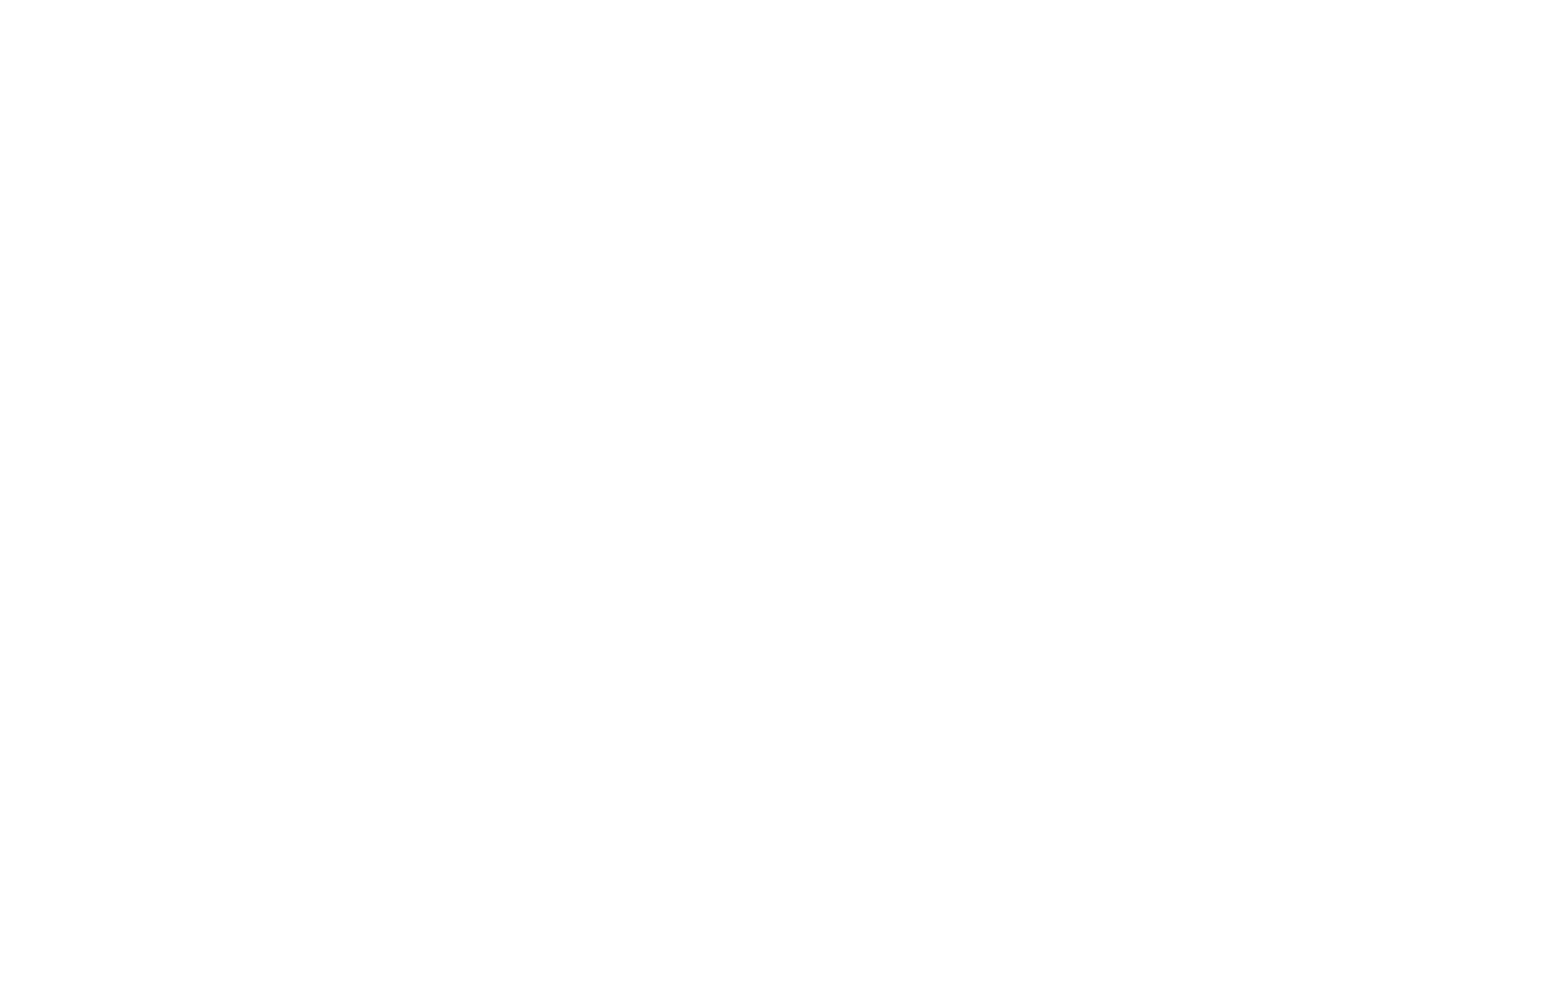 Недопустимое использование логотипа - Брендбук производителя тюбингов Baboom